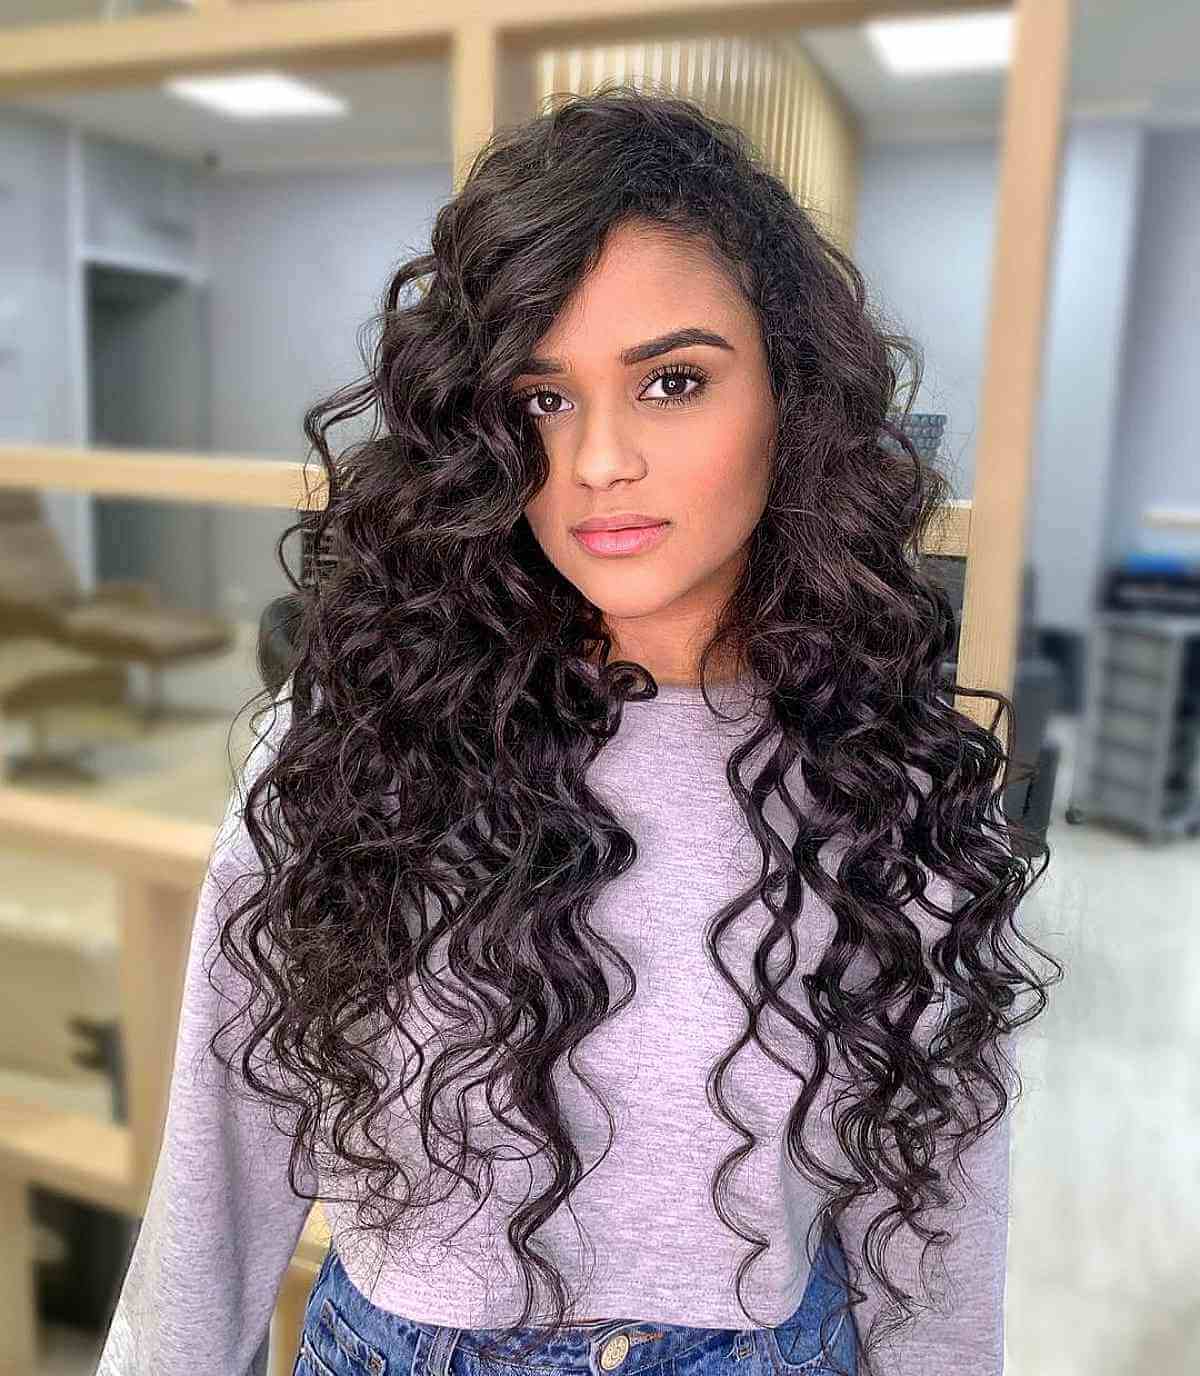 Waist-Length Curly Black Hair